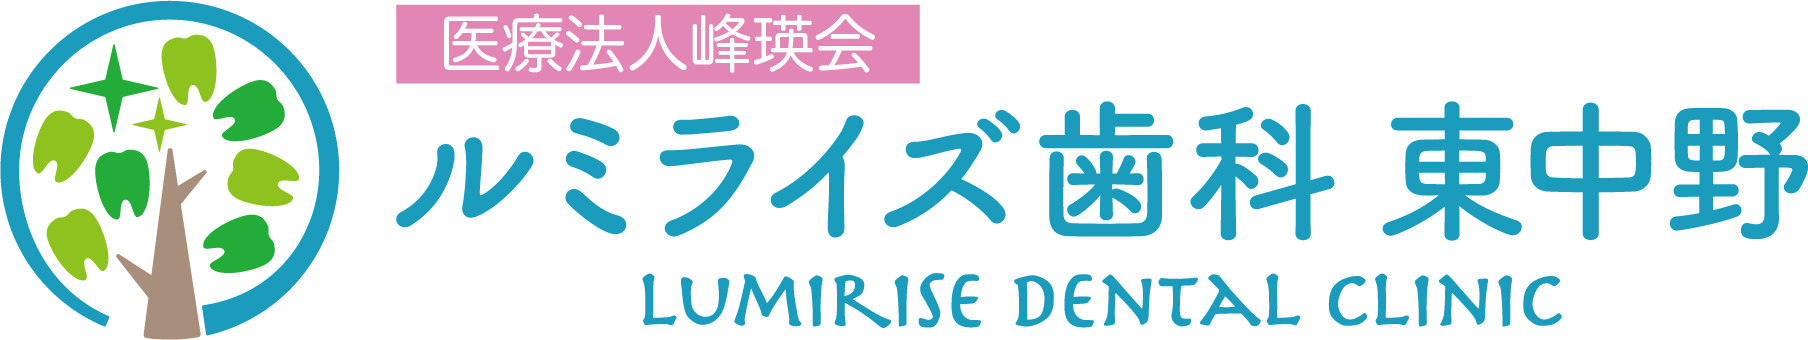 ルミライズ歯科東中野_logo